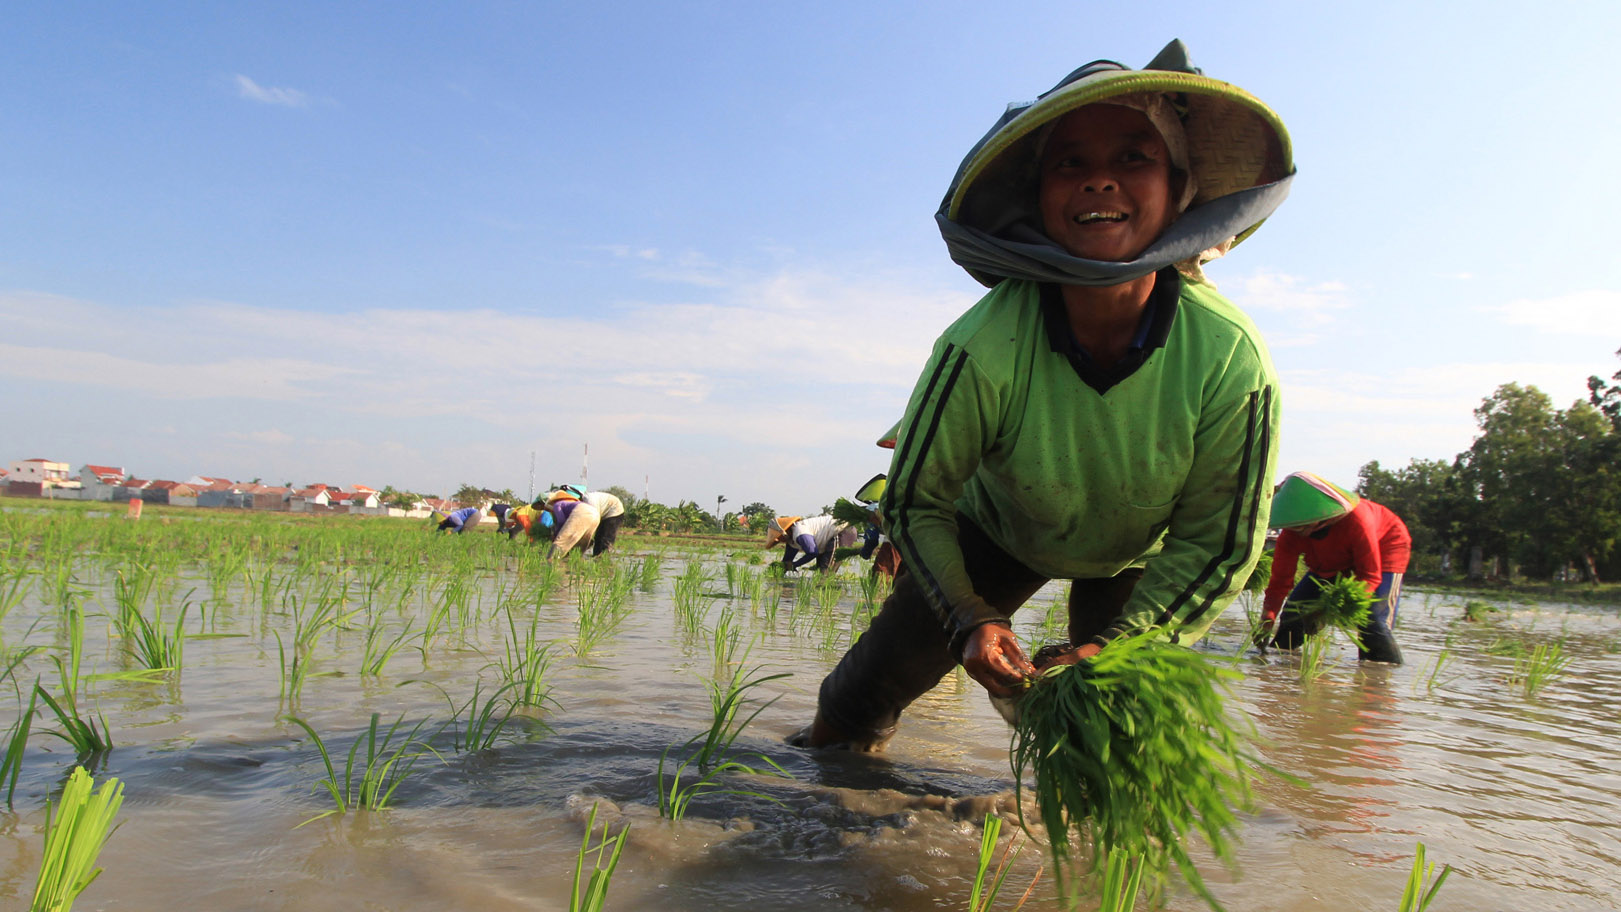 Sejumlah petani menanam padi di areal persawahan desa Pekandangan, Indramayu, Jawa Barat, Jumat (11/7). Meski telah memasuki musim kemarau yang beresiko kesulitan air, petani di daerah tersebut tetap menanam padi dengan sistem pengairan pompanisasi. ANTARA FOTO/Dedhez Anggara/ed/nz/14.